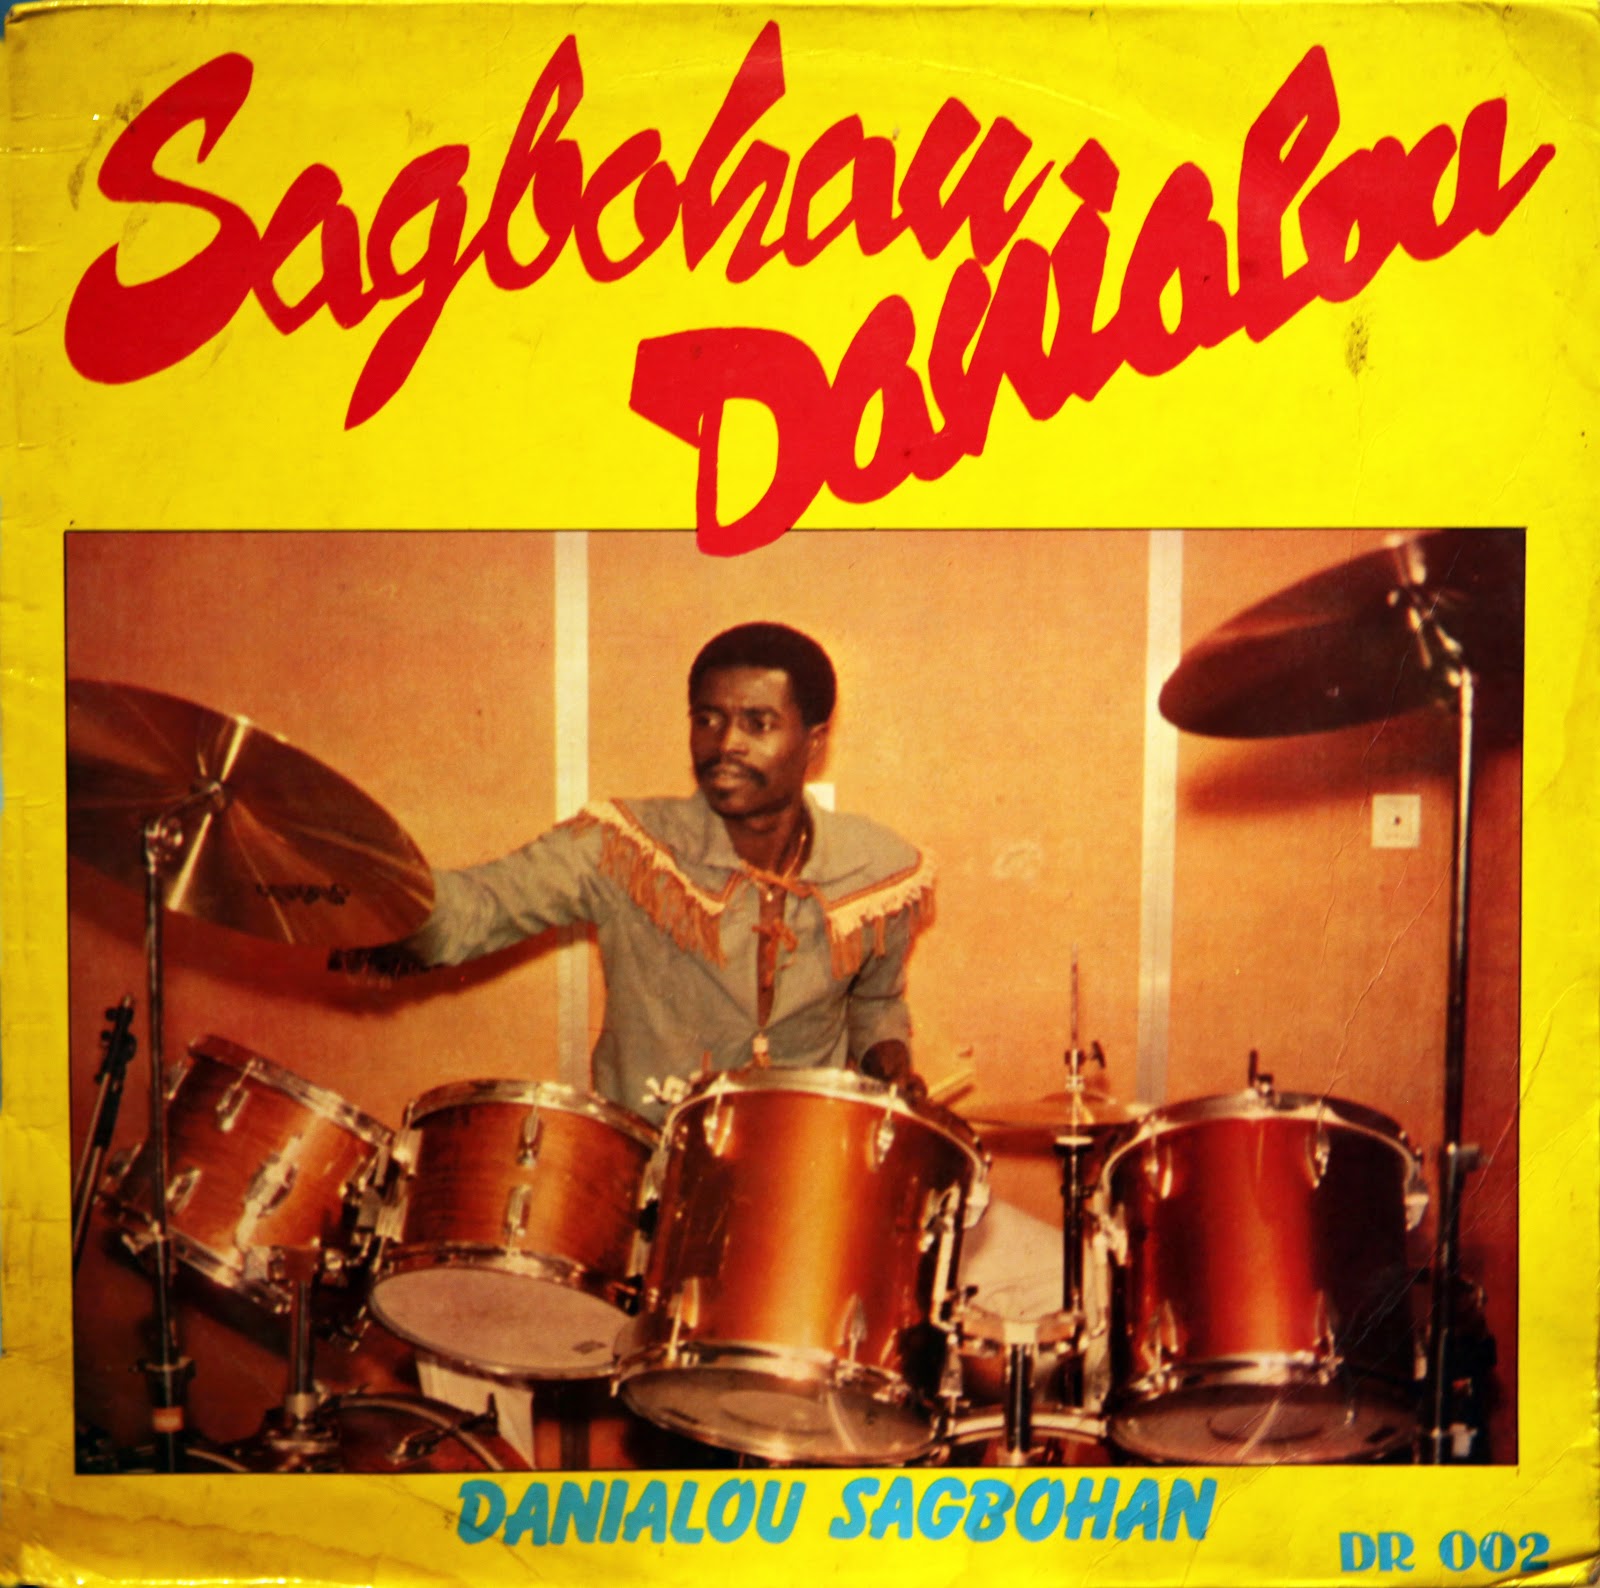 Danialou Sagbohan (1980) Danialou+Sagbohan+(DR+002)+FRONT